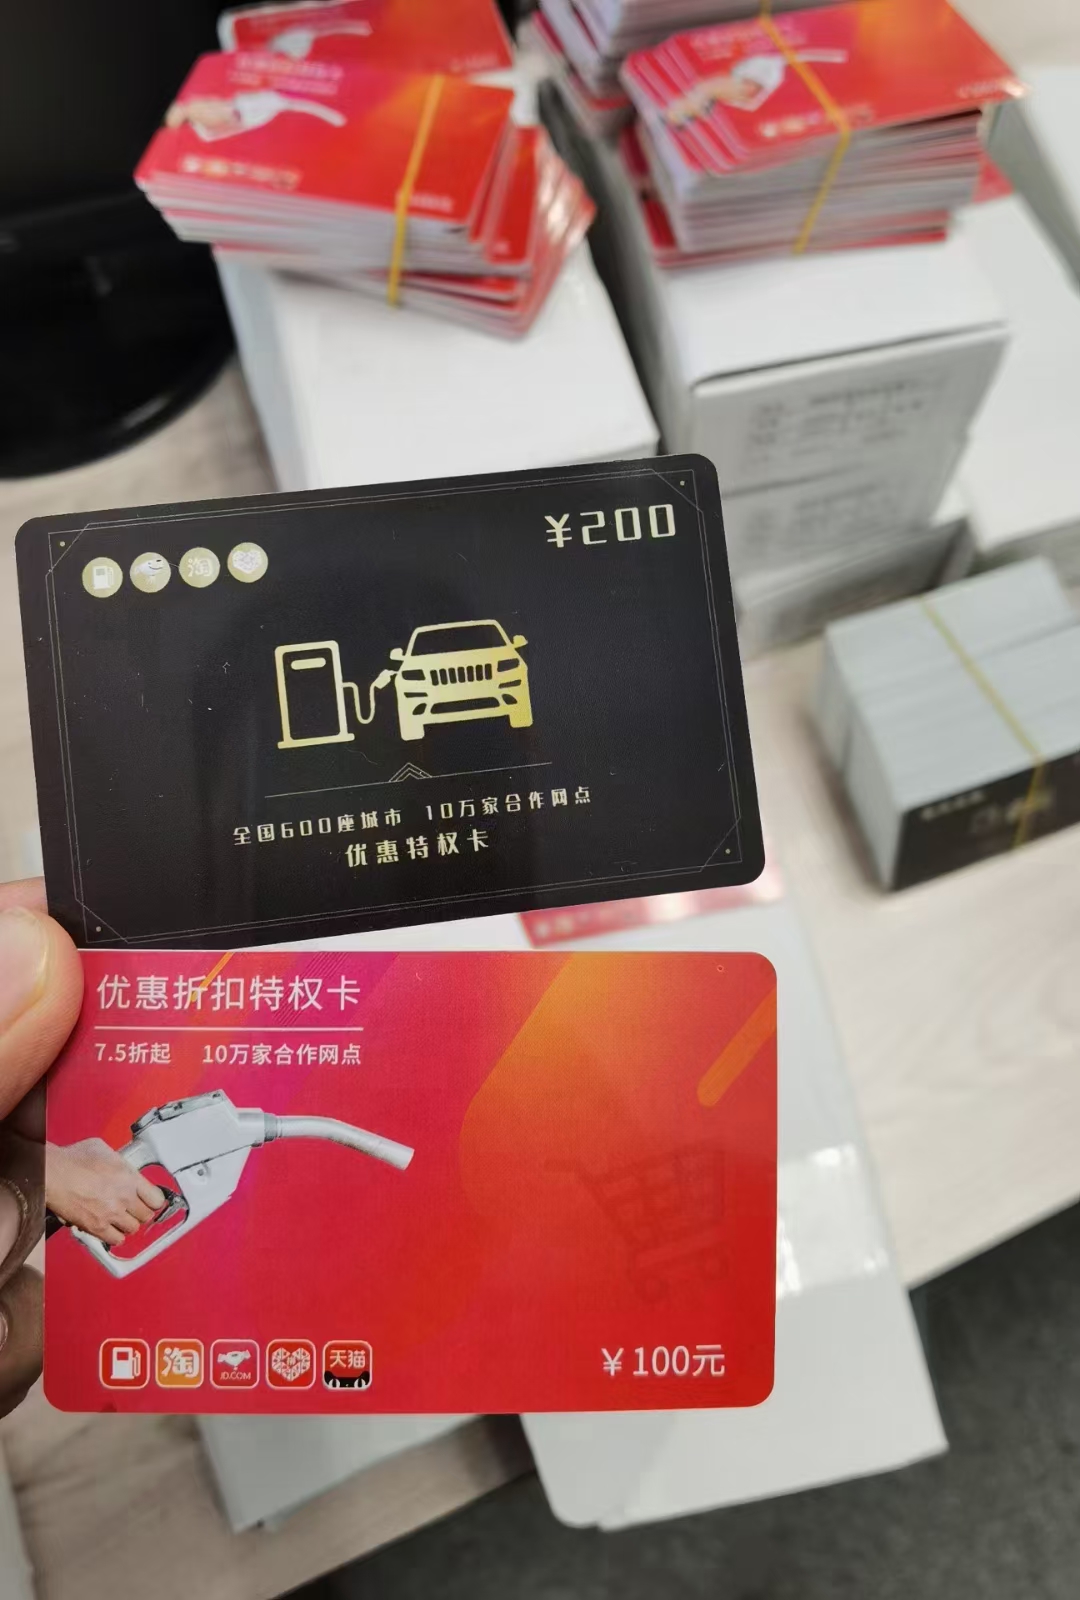 湘潭加油8折软件优惠加油卡系统 加油折扣卡源头